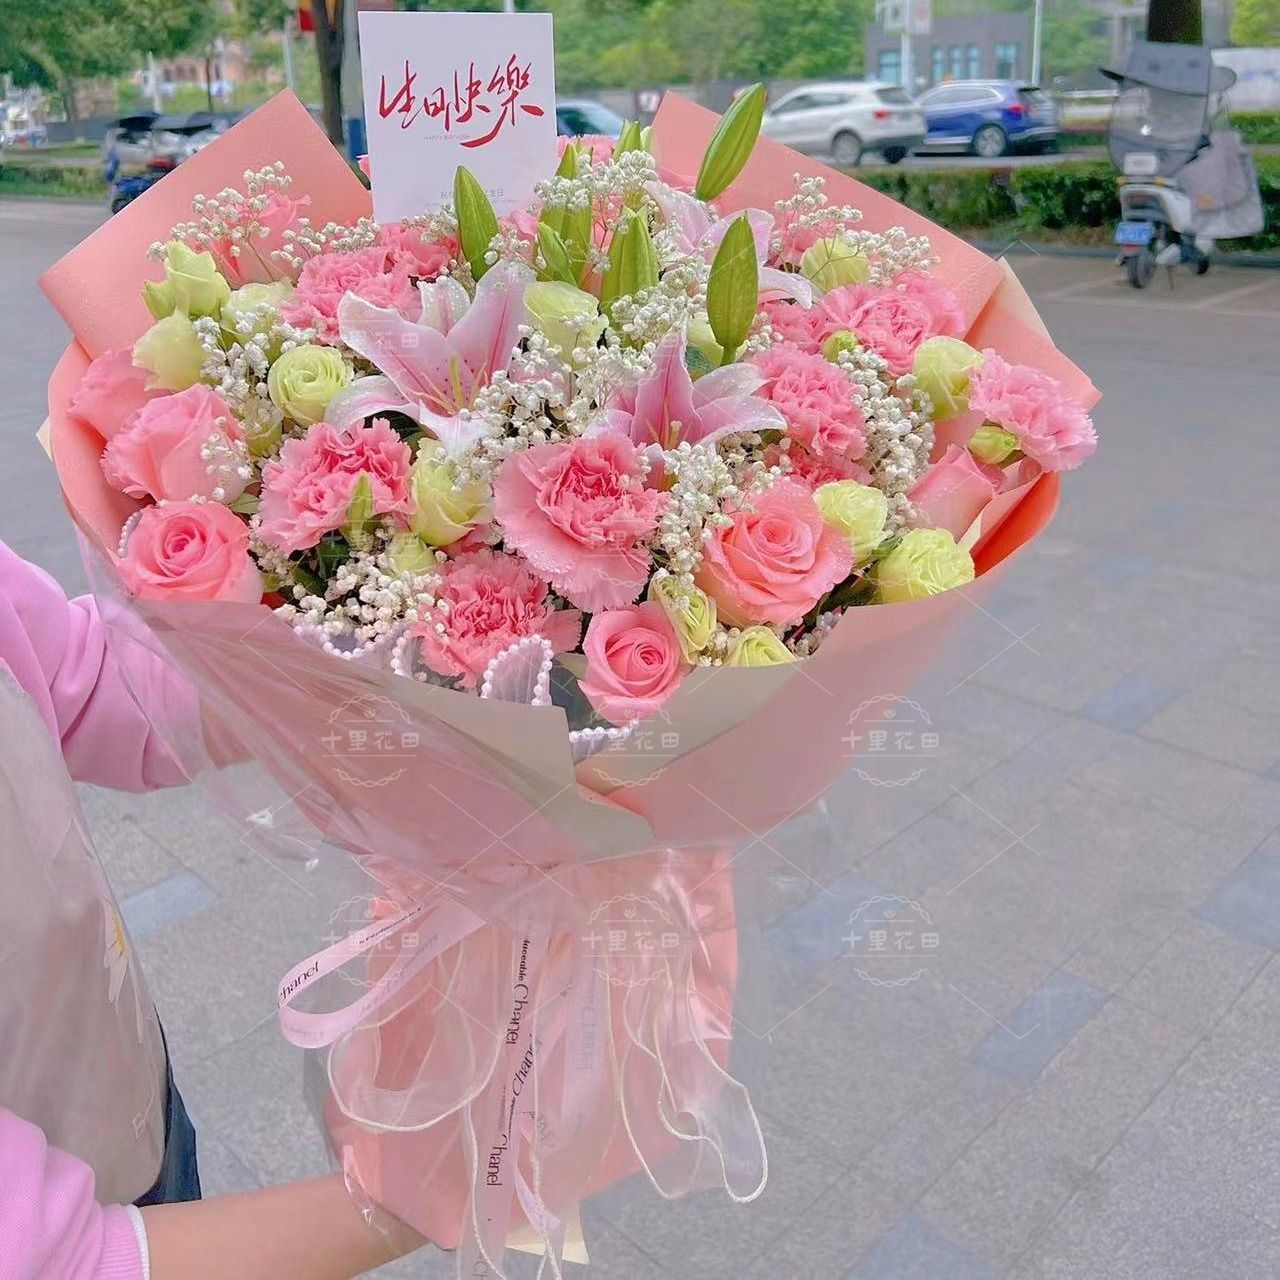 21朵粉色康乃馨百合混搭花束送妈妈送长辈生日鲜花外卖鲜花送货上门